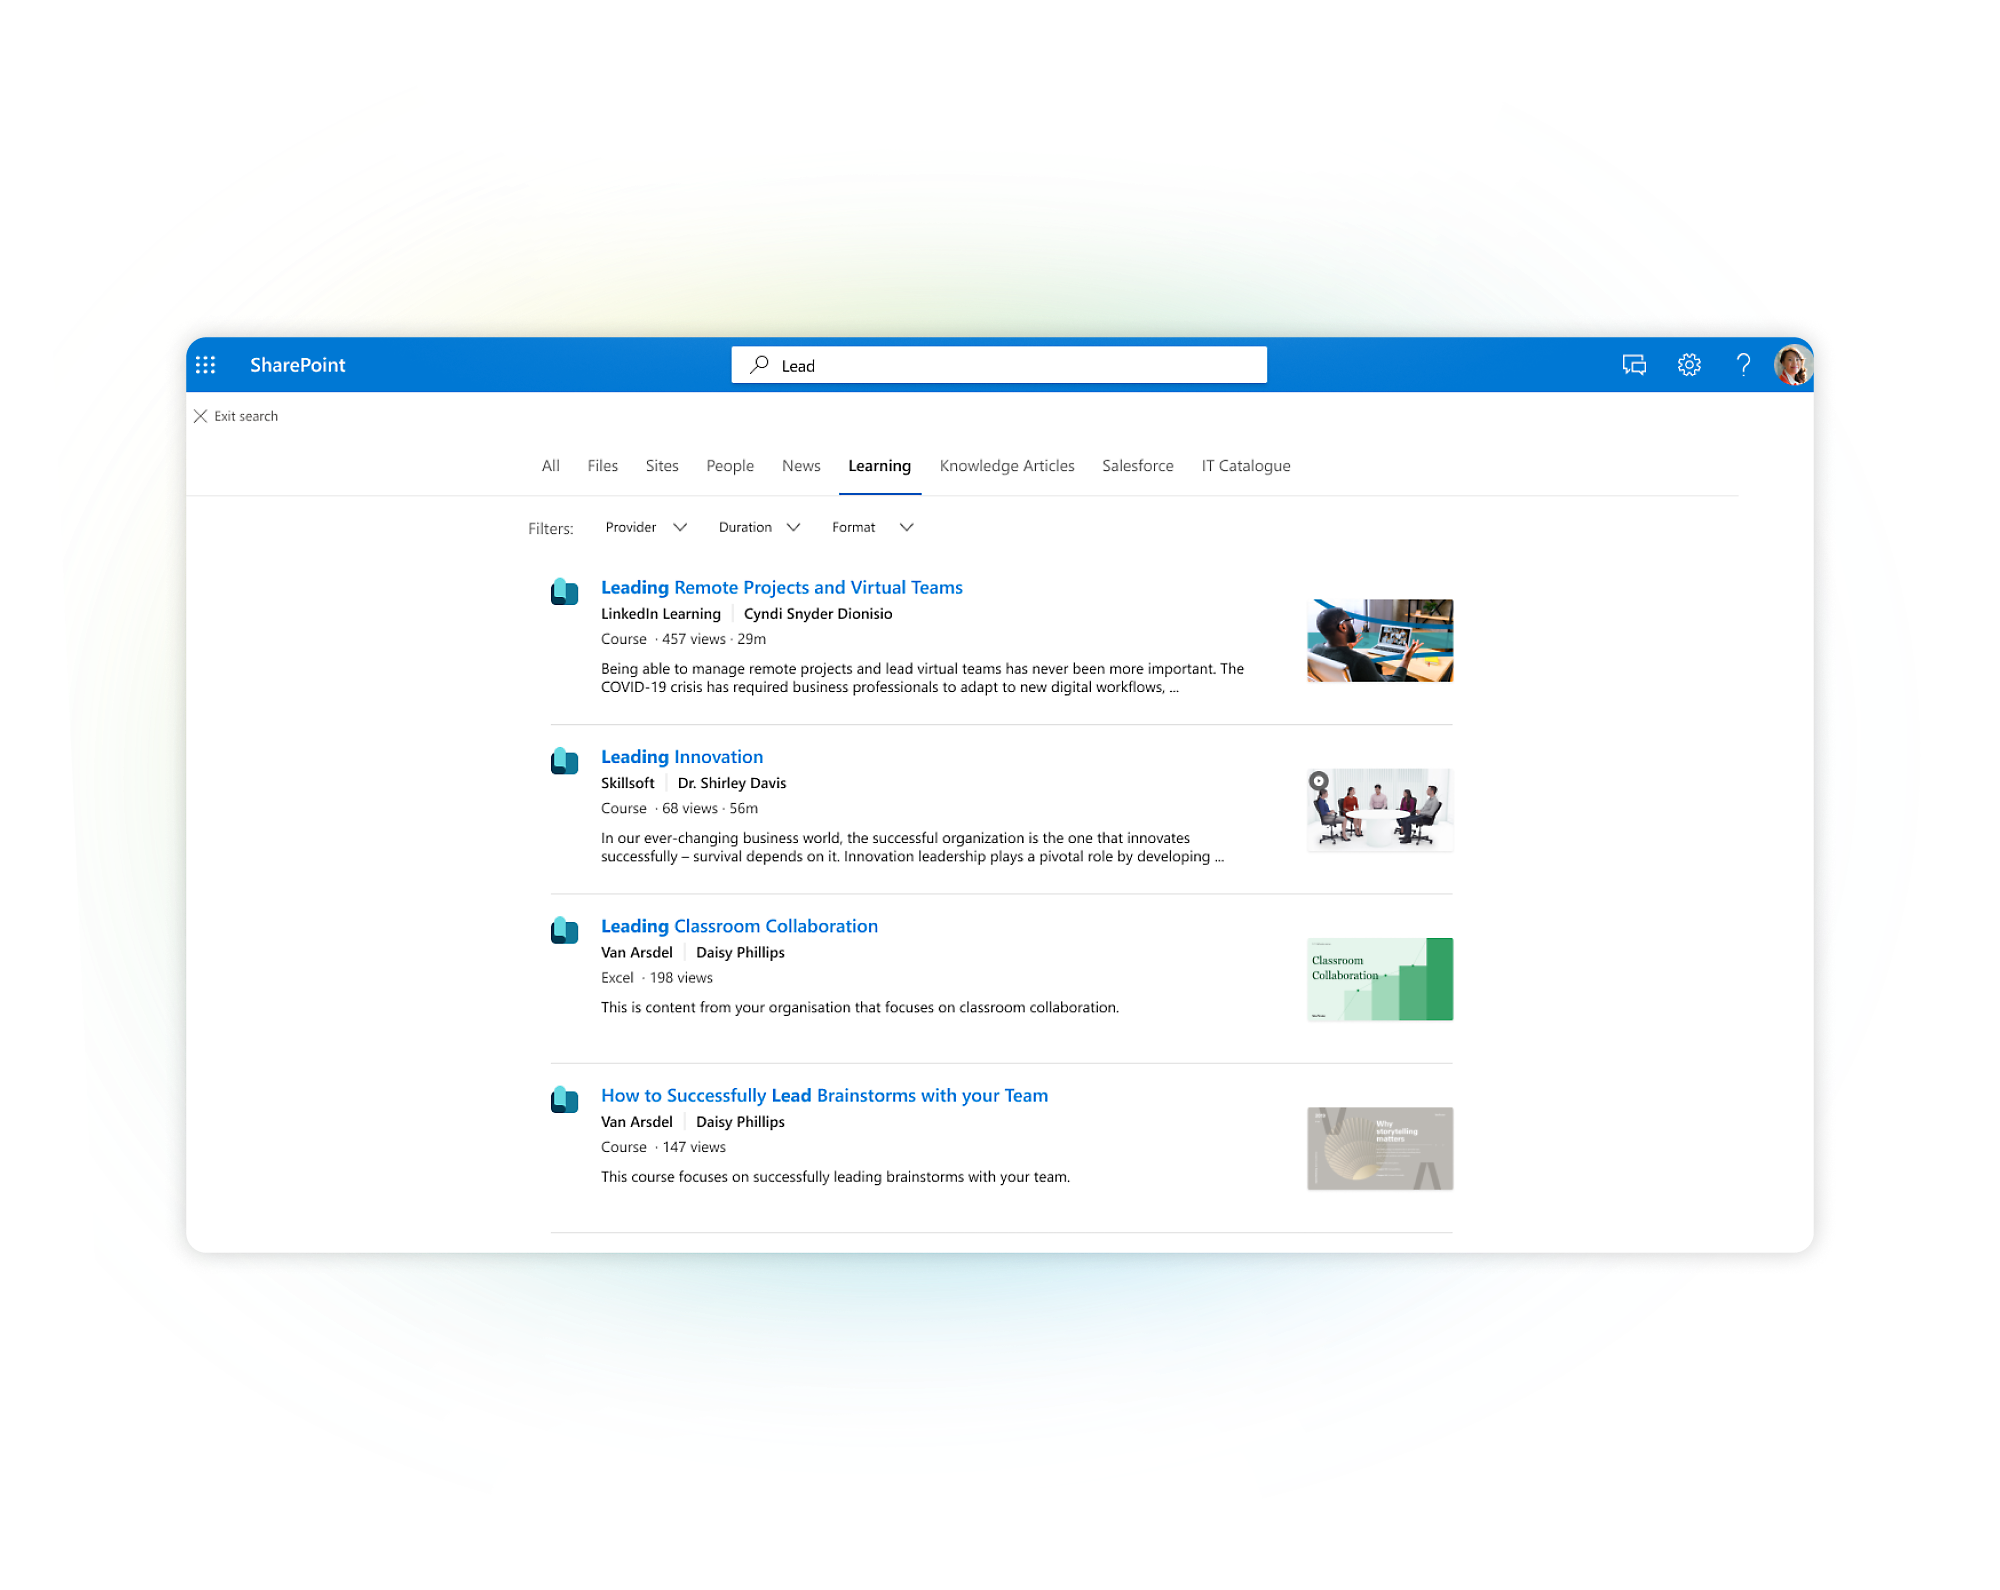 SharePoint’te gezinme: Dosyalar, Siteler, İnsanlar. Kurslar arasında Uzaktan Projeler, İnovasyon, Sınıf İçi İşbirliği, Beyin Fırtınası bulunur